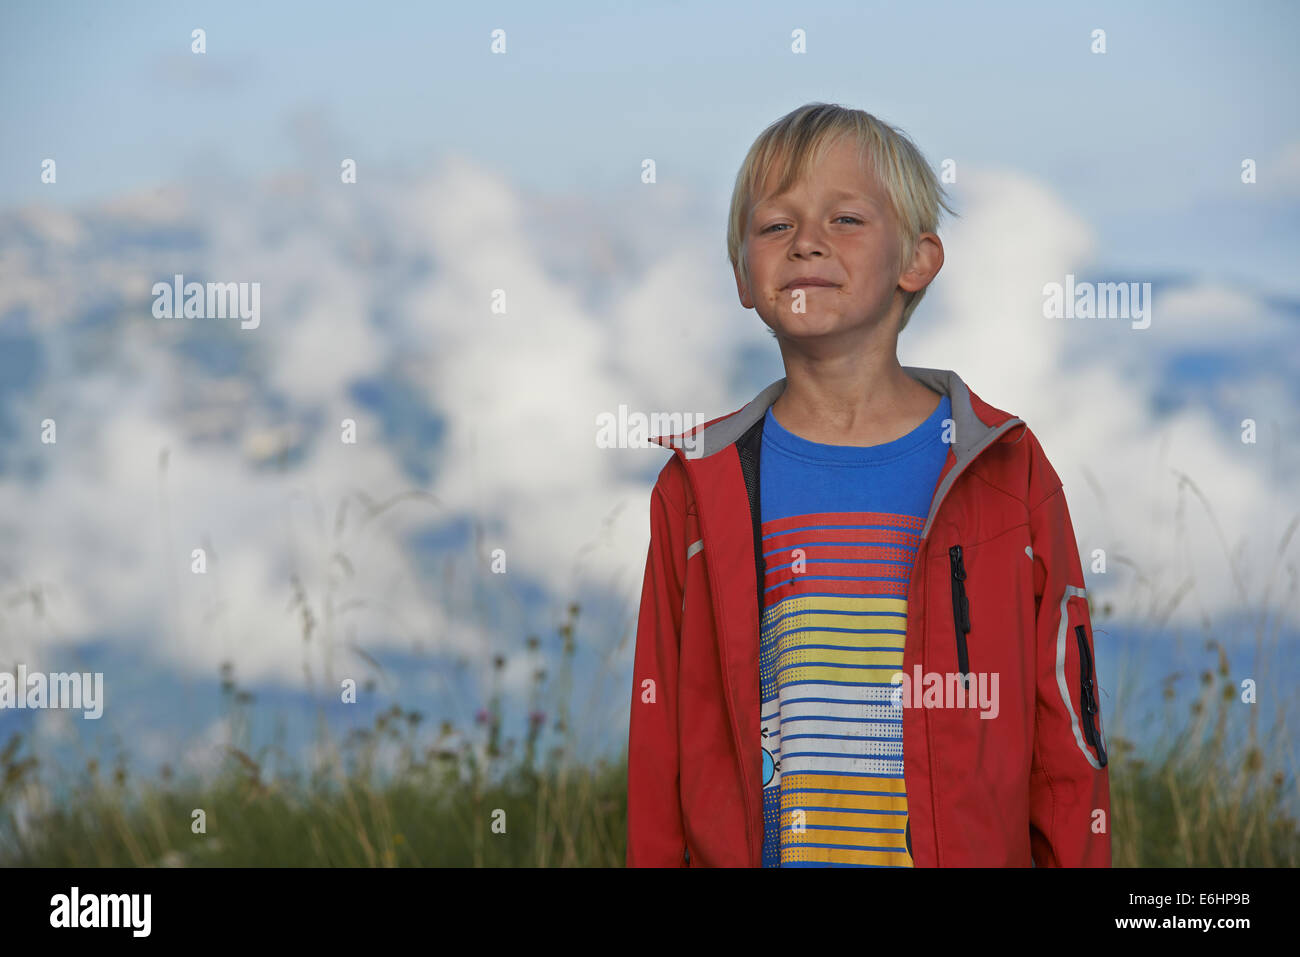 Porträt des Kindes Blond Boy lächelnd in Alpen Berg mit Wolken Hintergrund, Monte Altissimo, Italien, Porträt Stockfoto